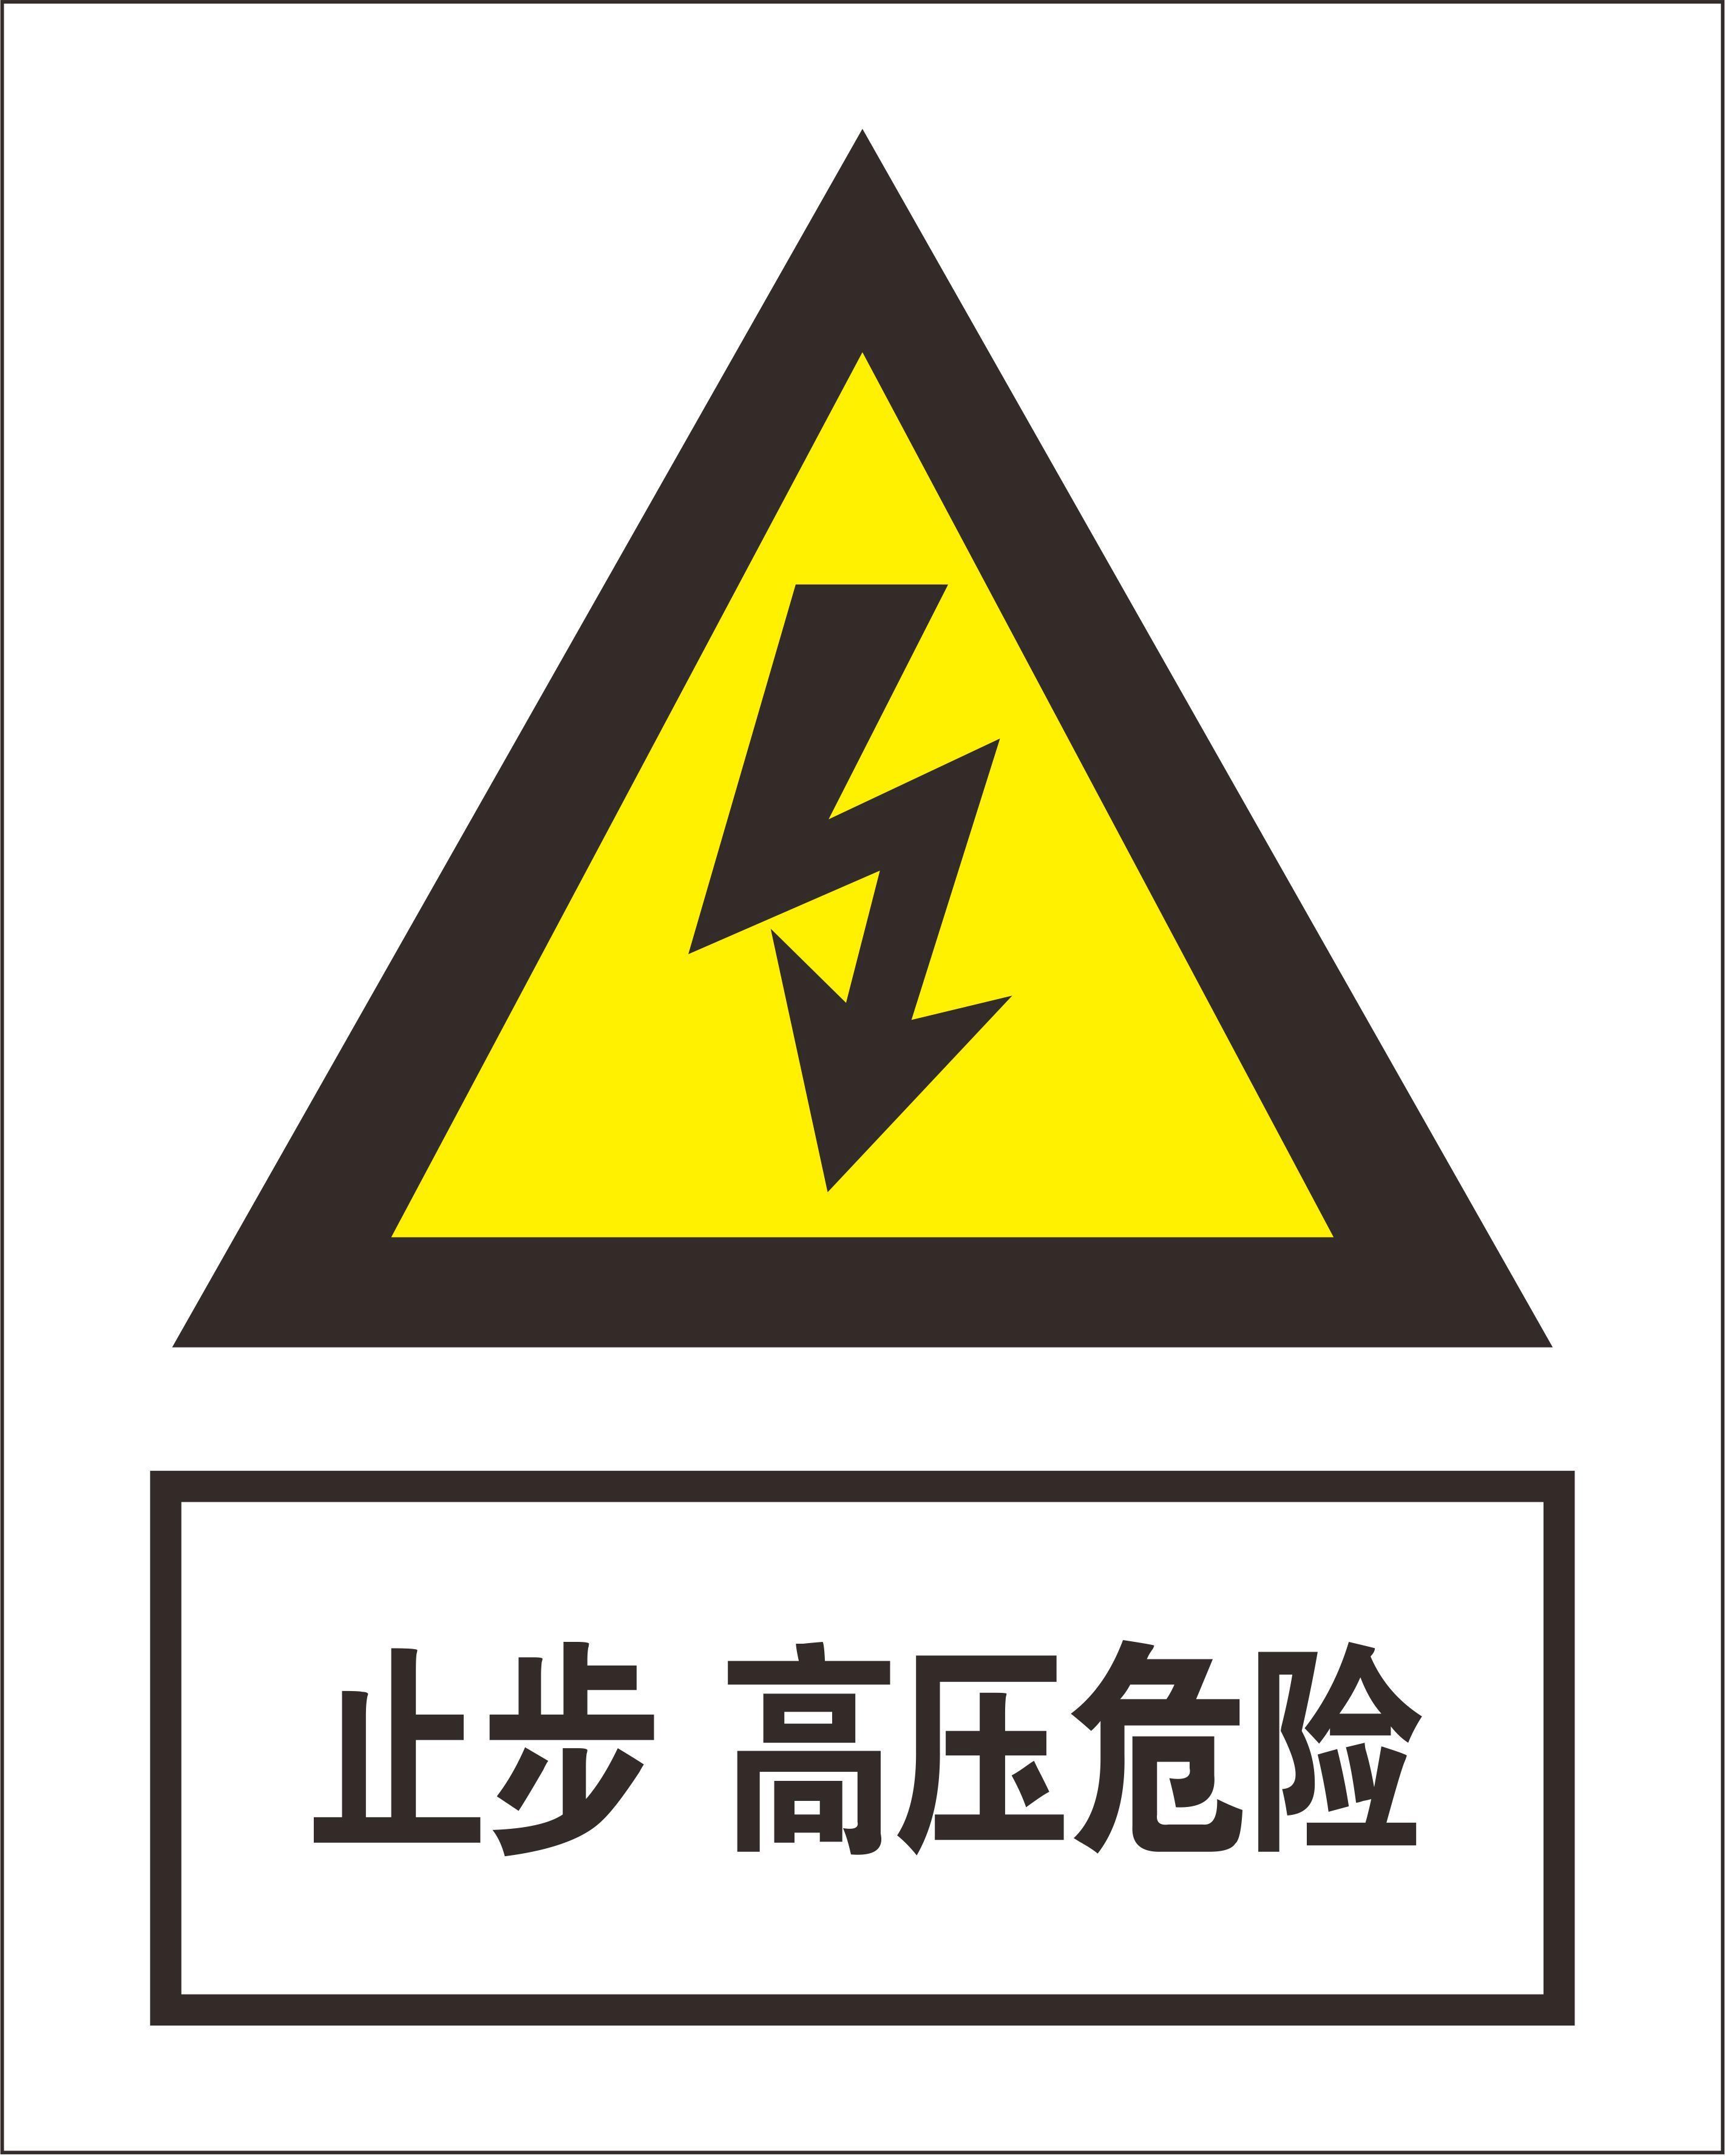  Power signage 